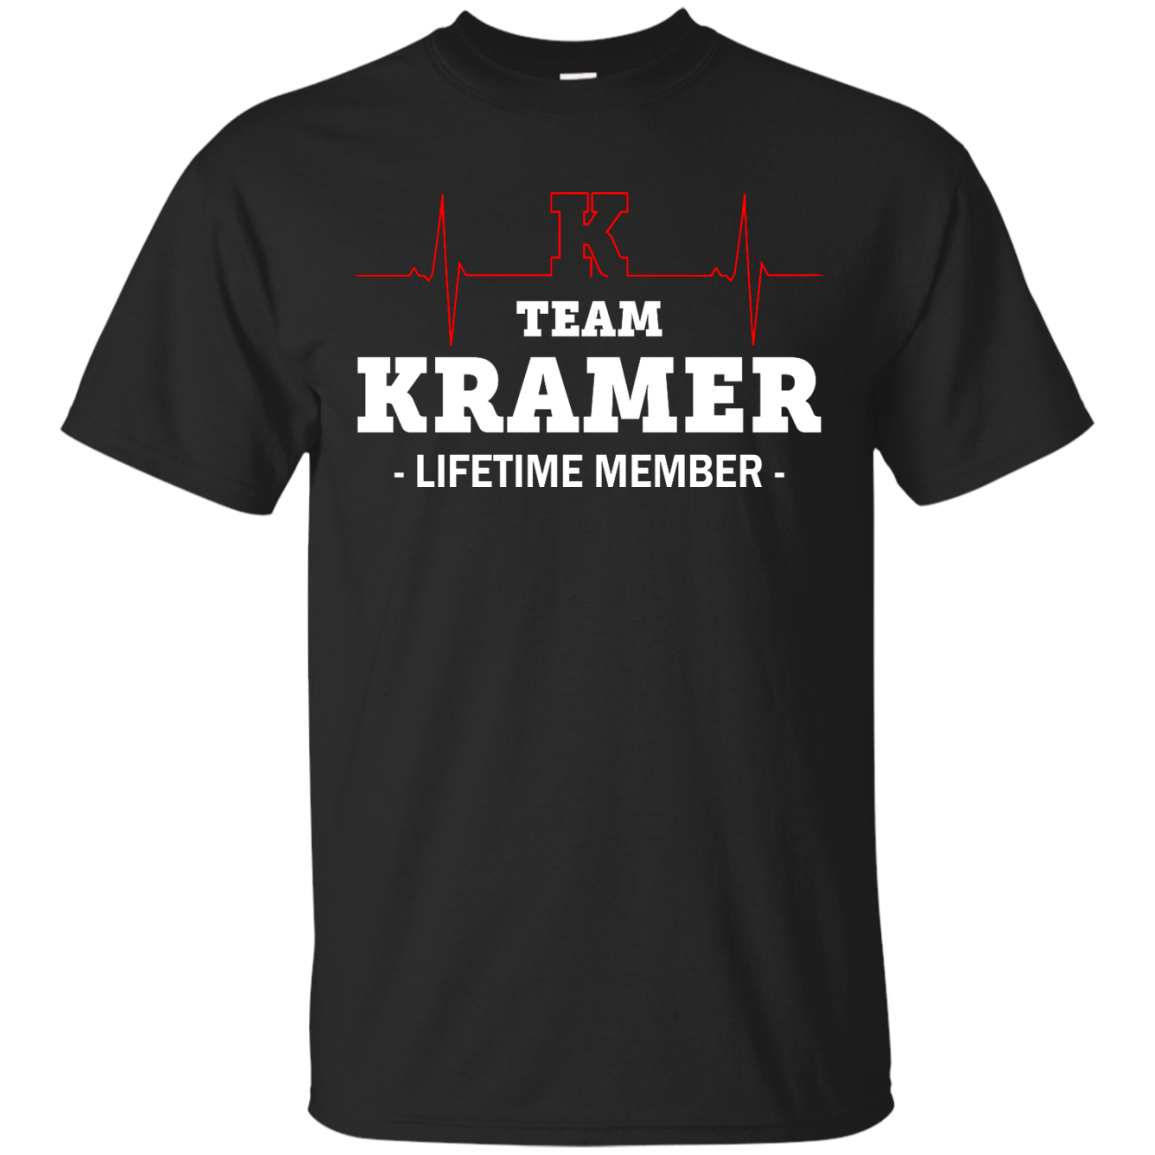 KRAMER: Team KRAMER Lifetime member shirt, hoodie